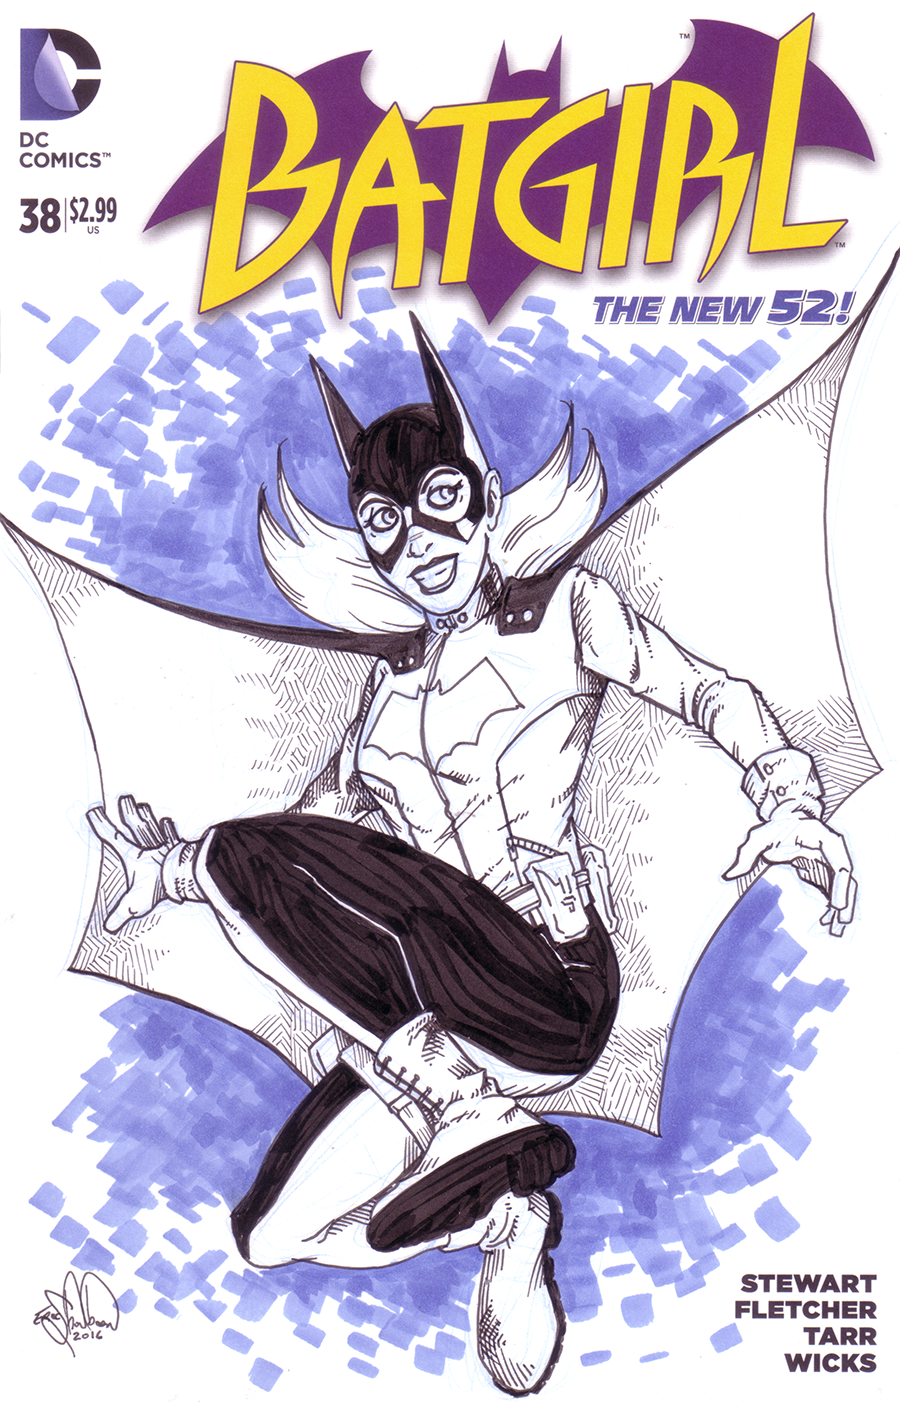 492. Batgirl